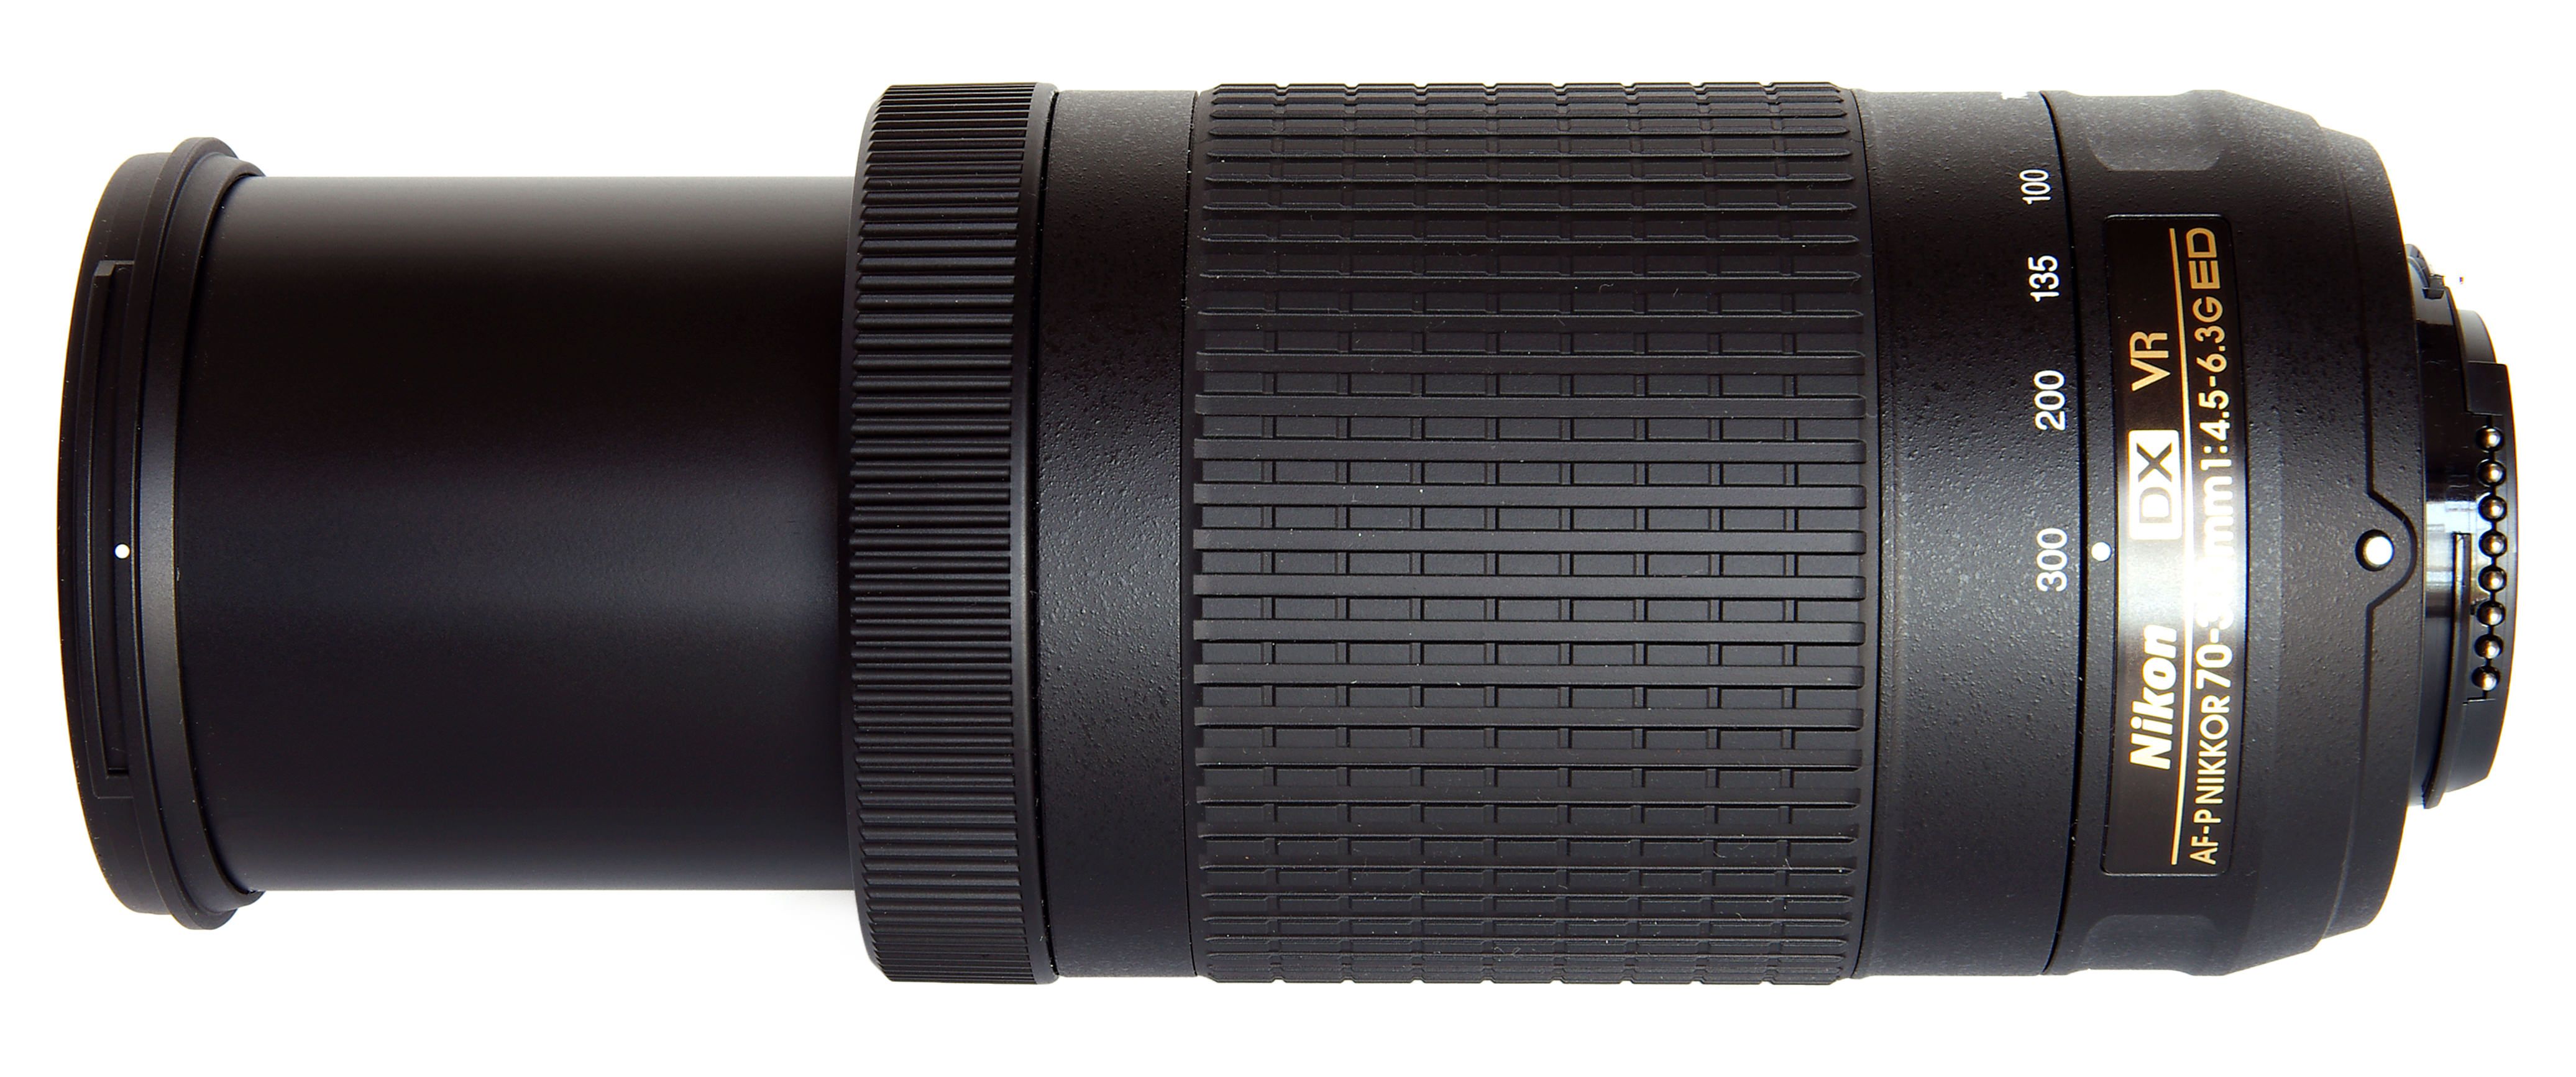 Nikon AF-P 70-300mm F4.5-6.3G ED VR 望遠セット内容